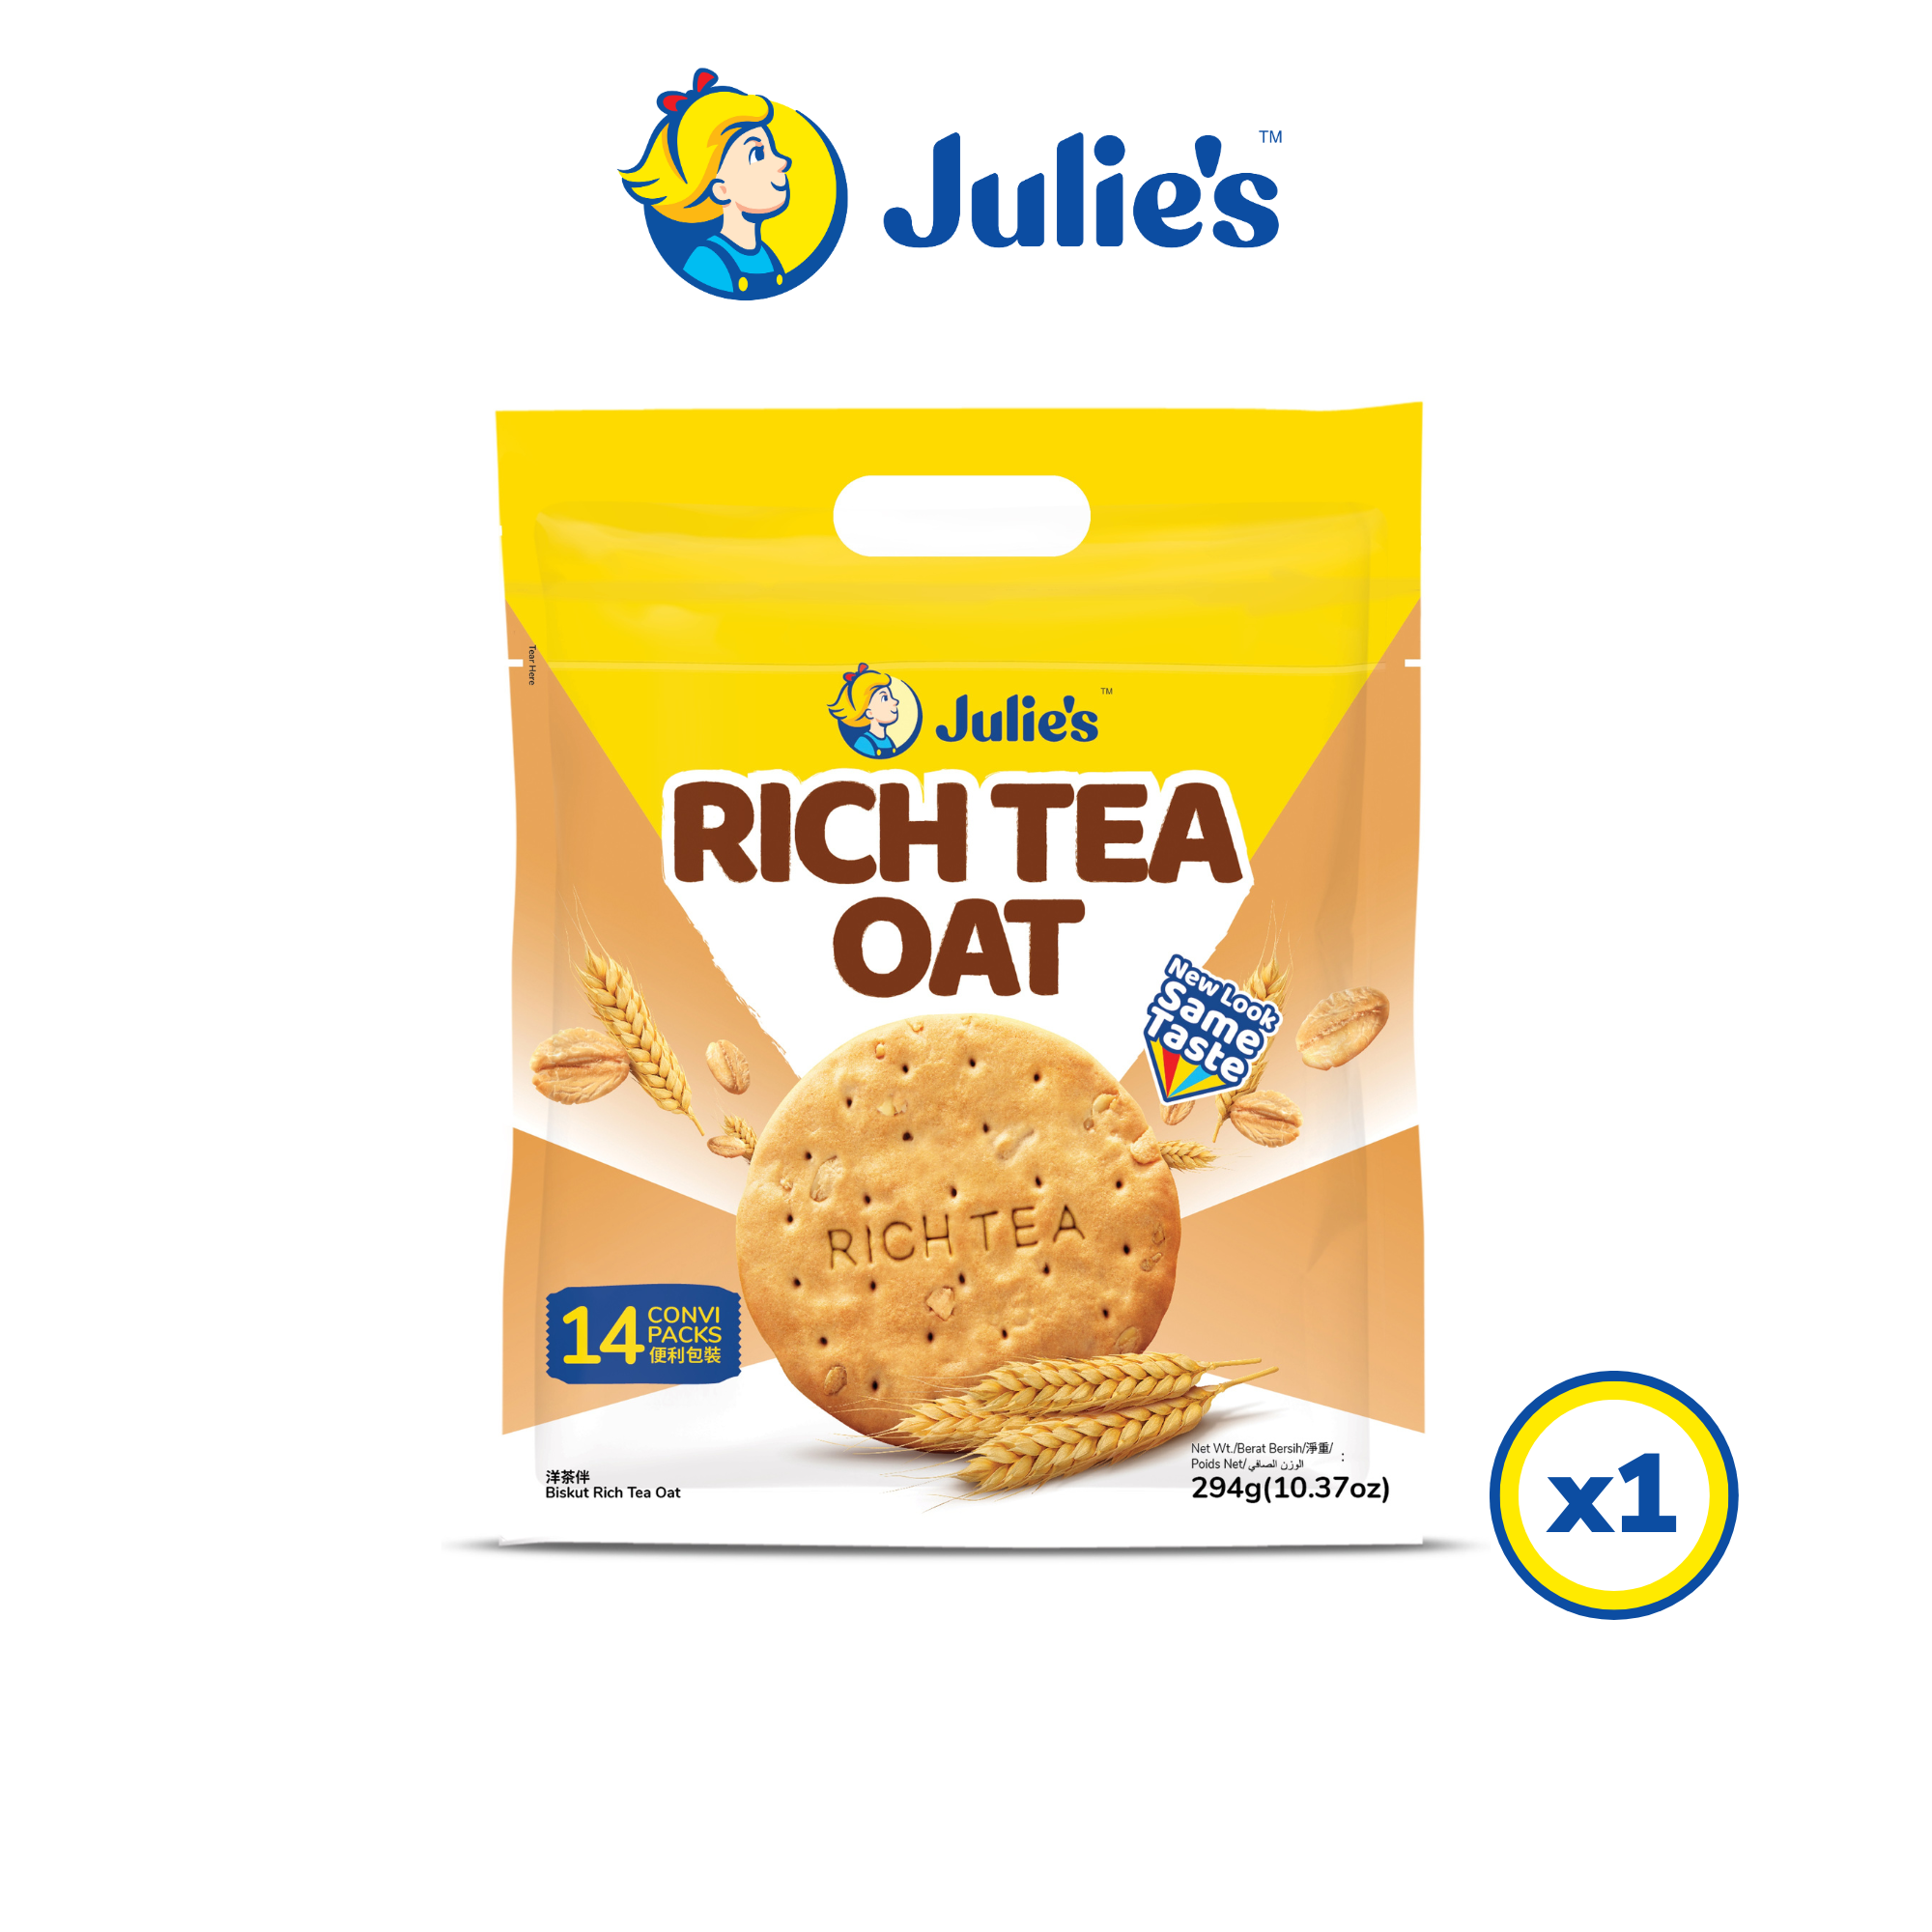 Julie's Rich Tea Oat 294g x 1 pack